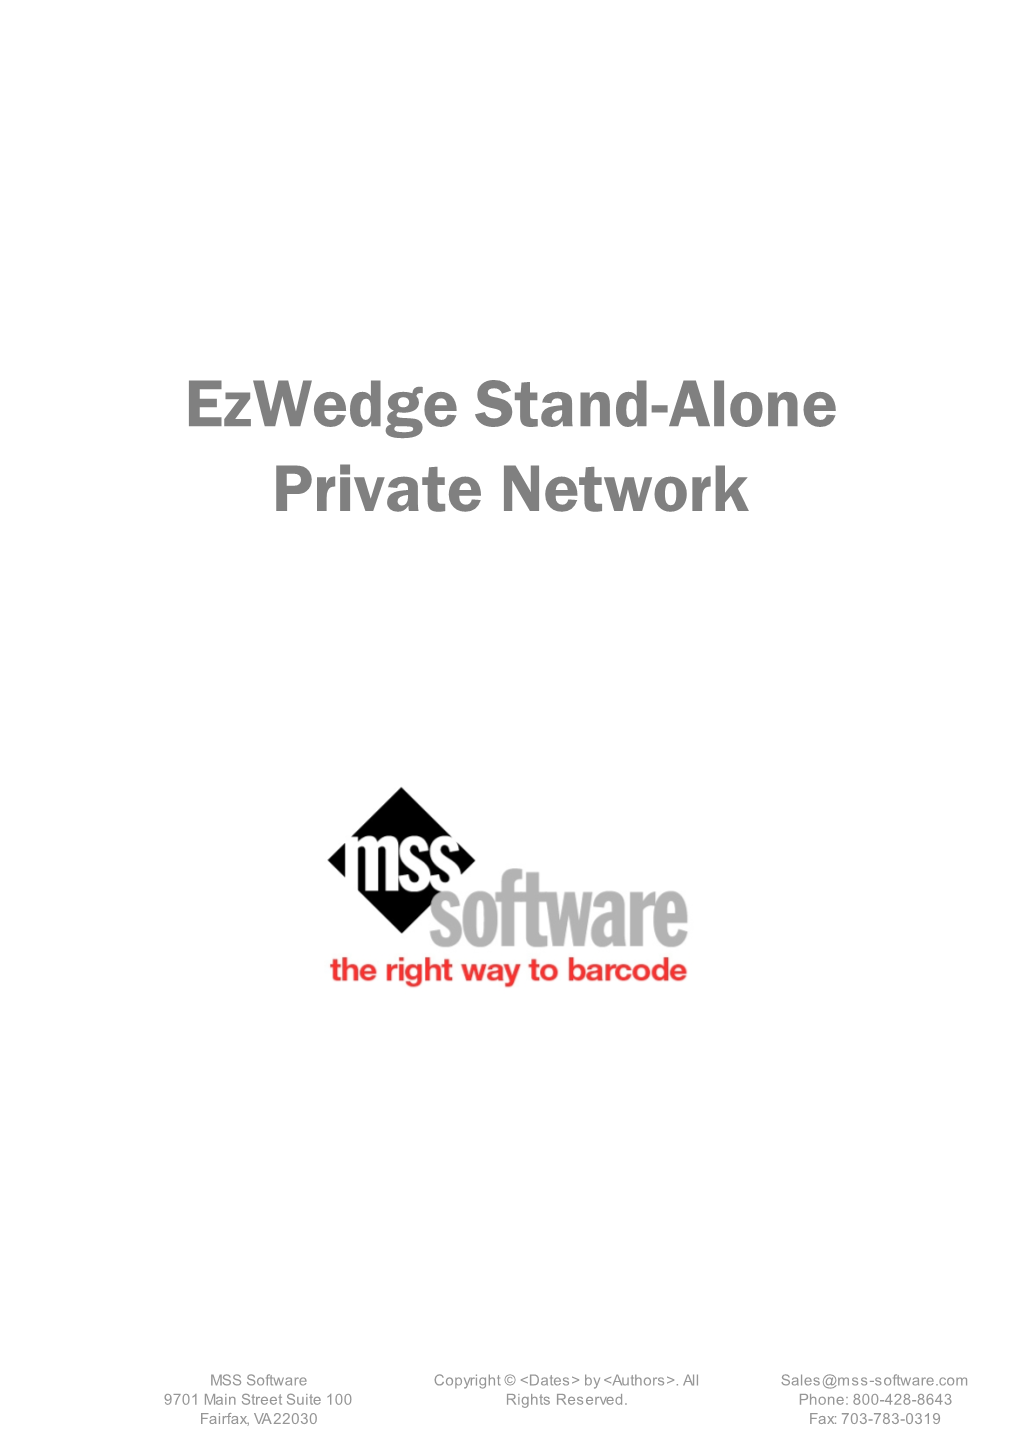 Ezwedge Stand-Alone Private Network